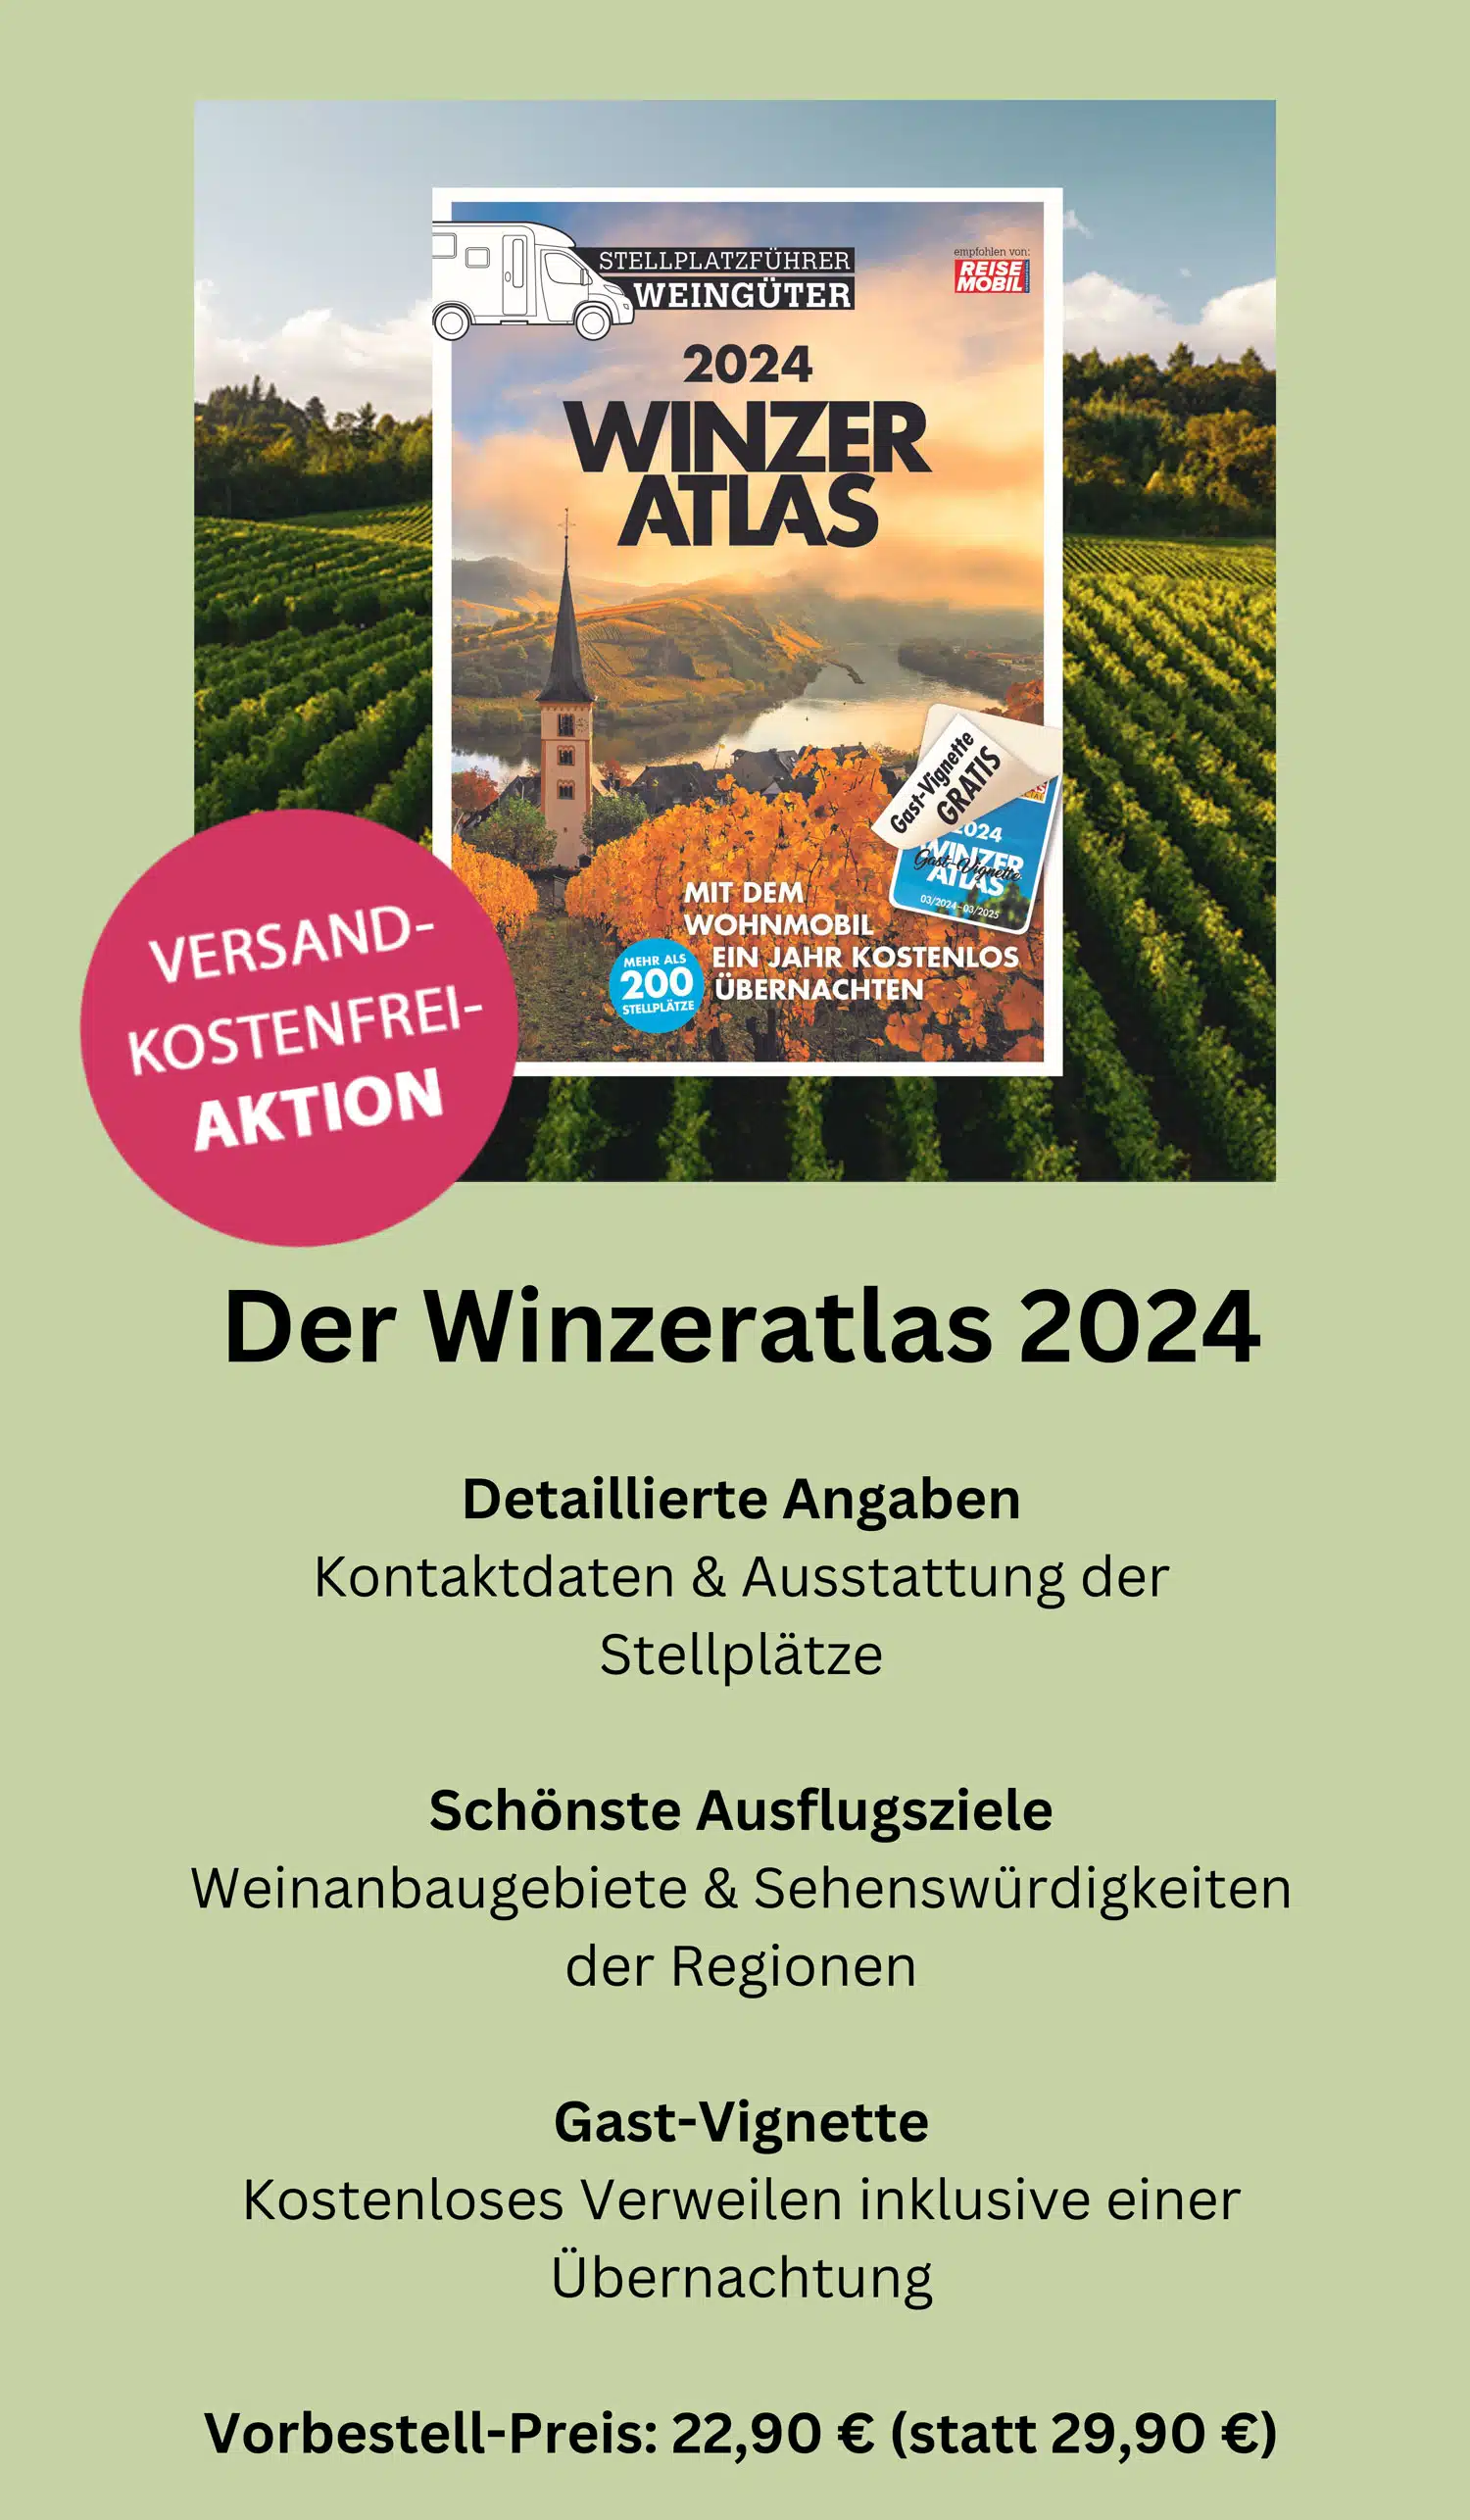 Winzeratlas 2024, Stellplatzführer Weingüter, Stellplätze Winzer